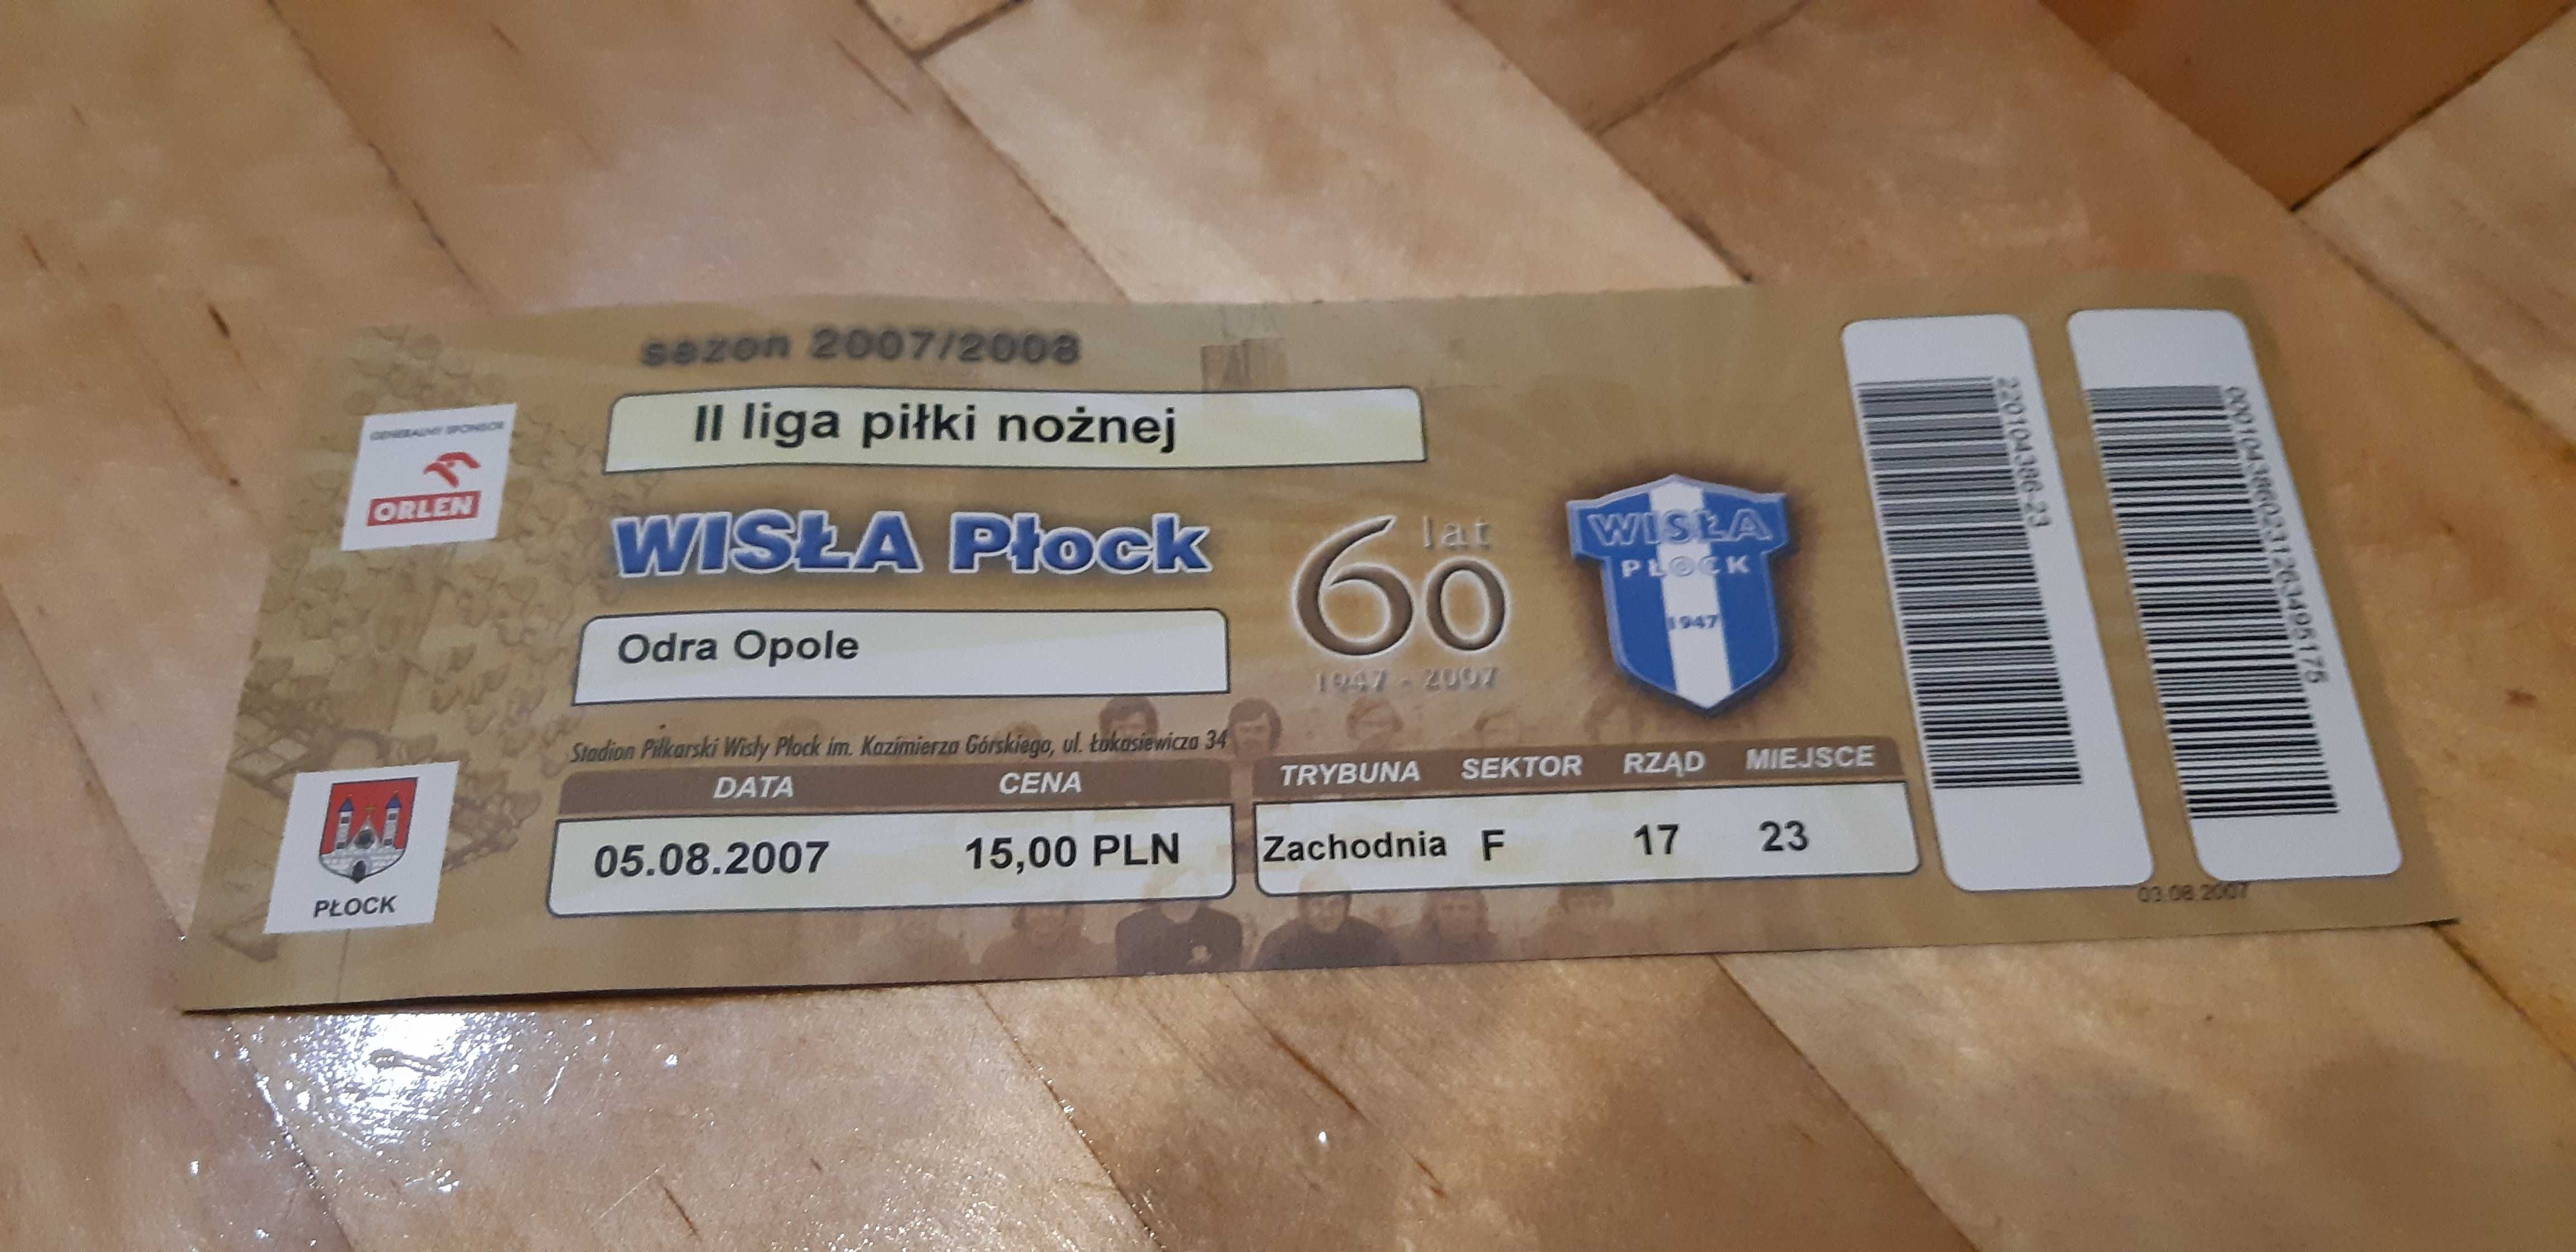 bilet Wisła Płock-Odra Opole 05.08.2007.